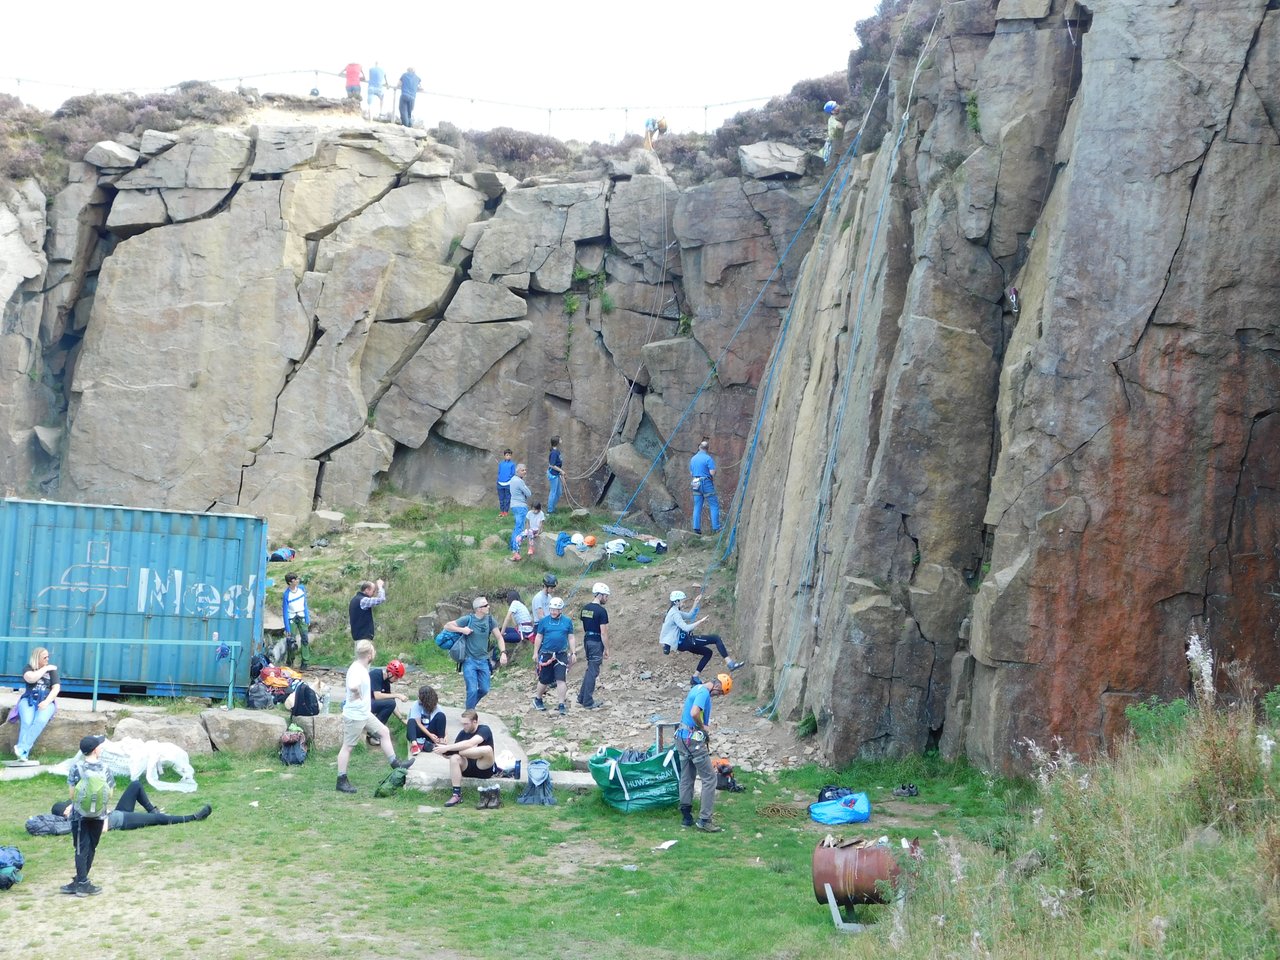 Many climbers rock climbing outdoors